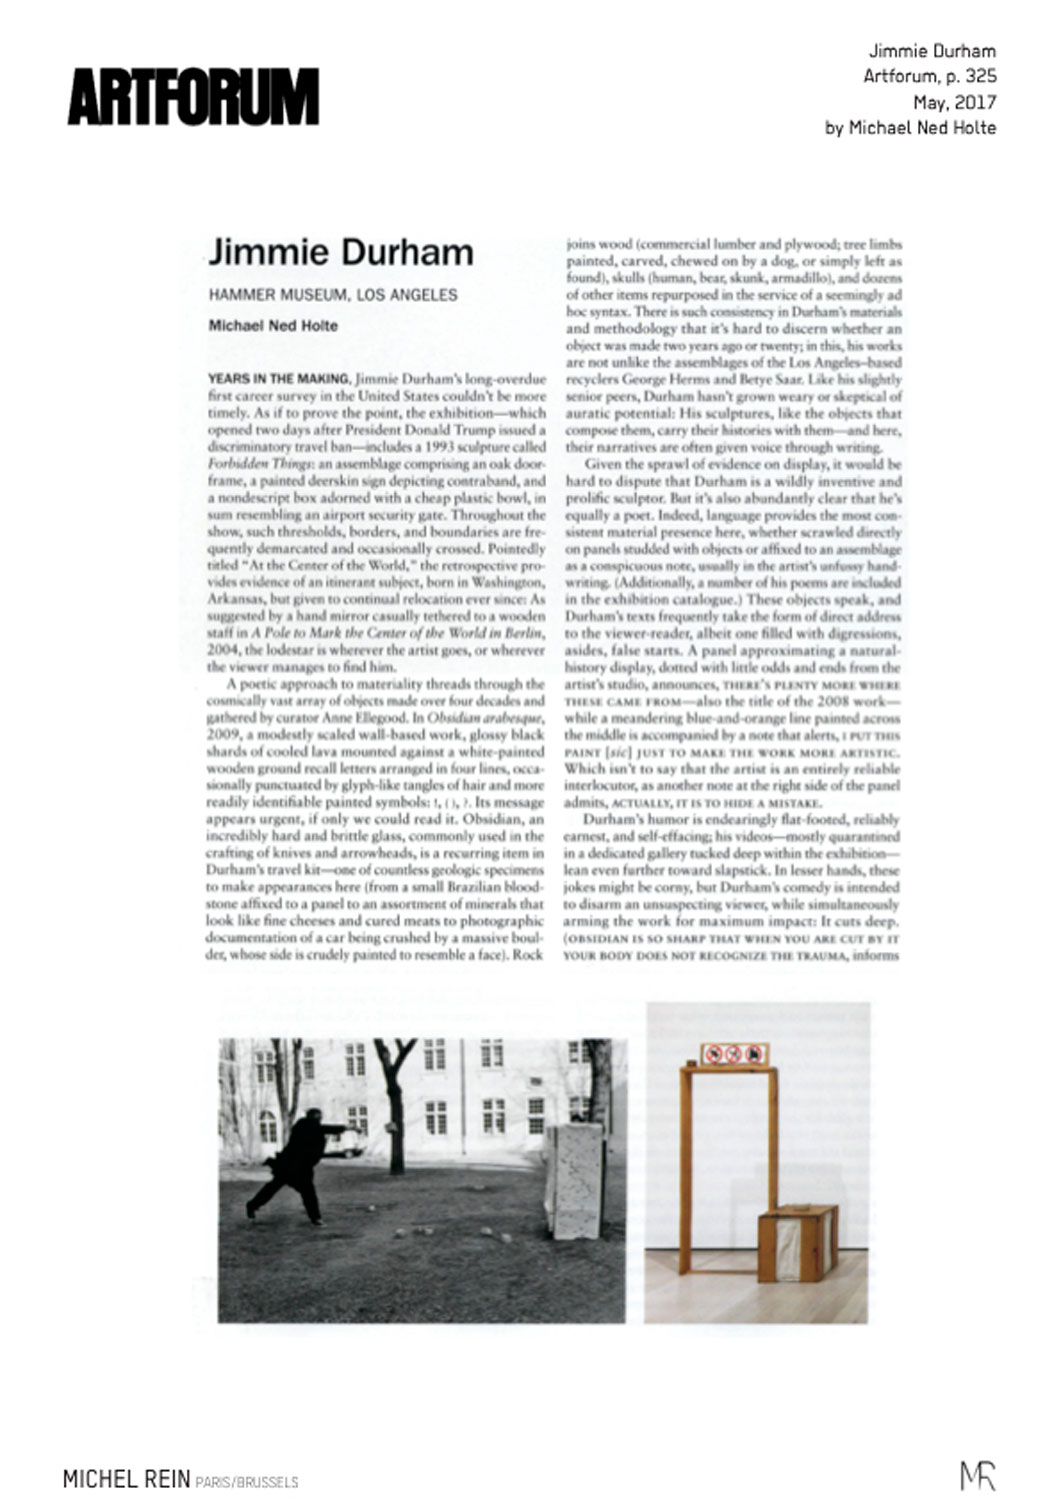 Jimmie Durham - Artforum